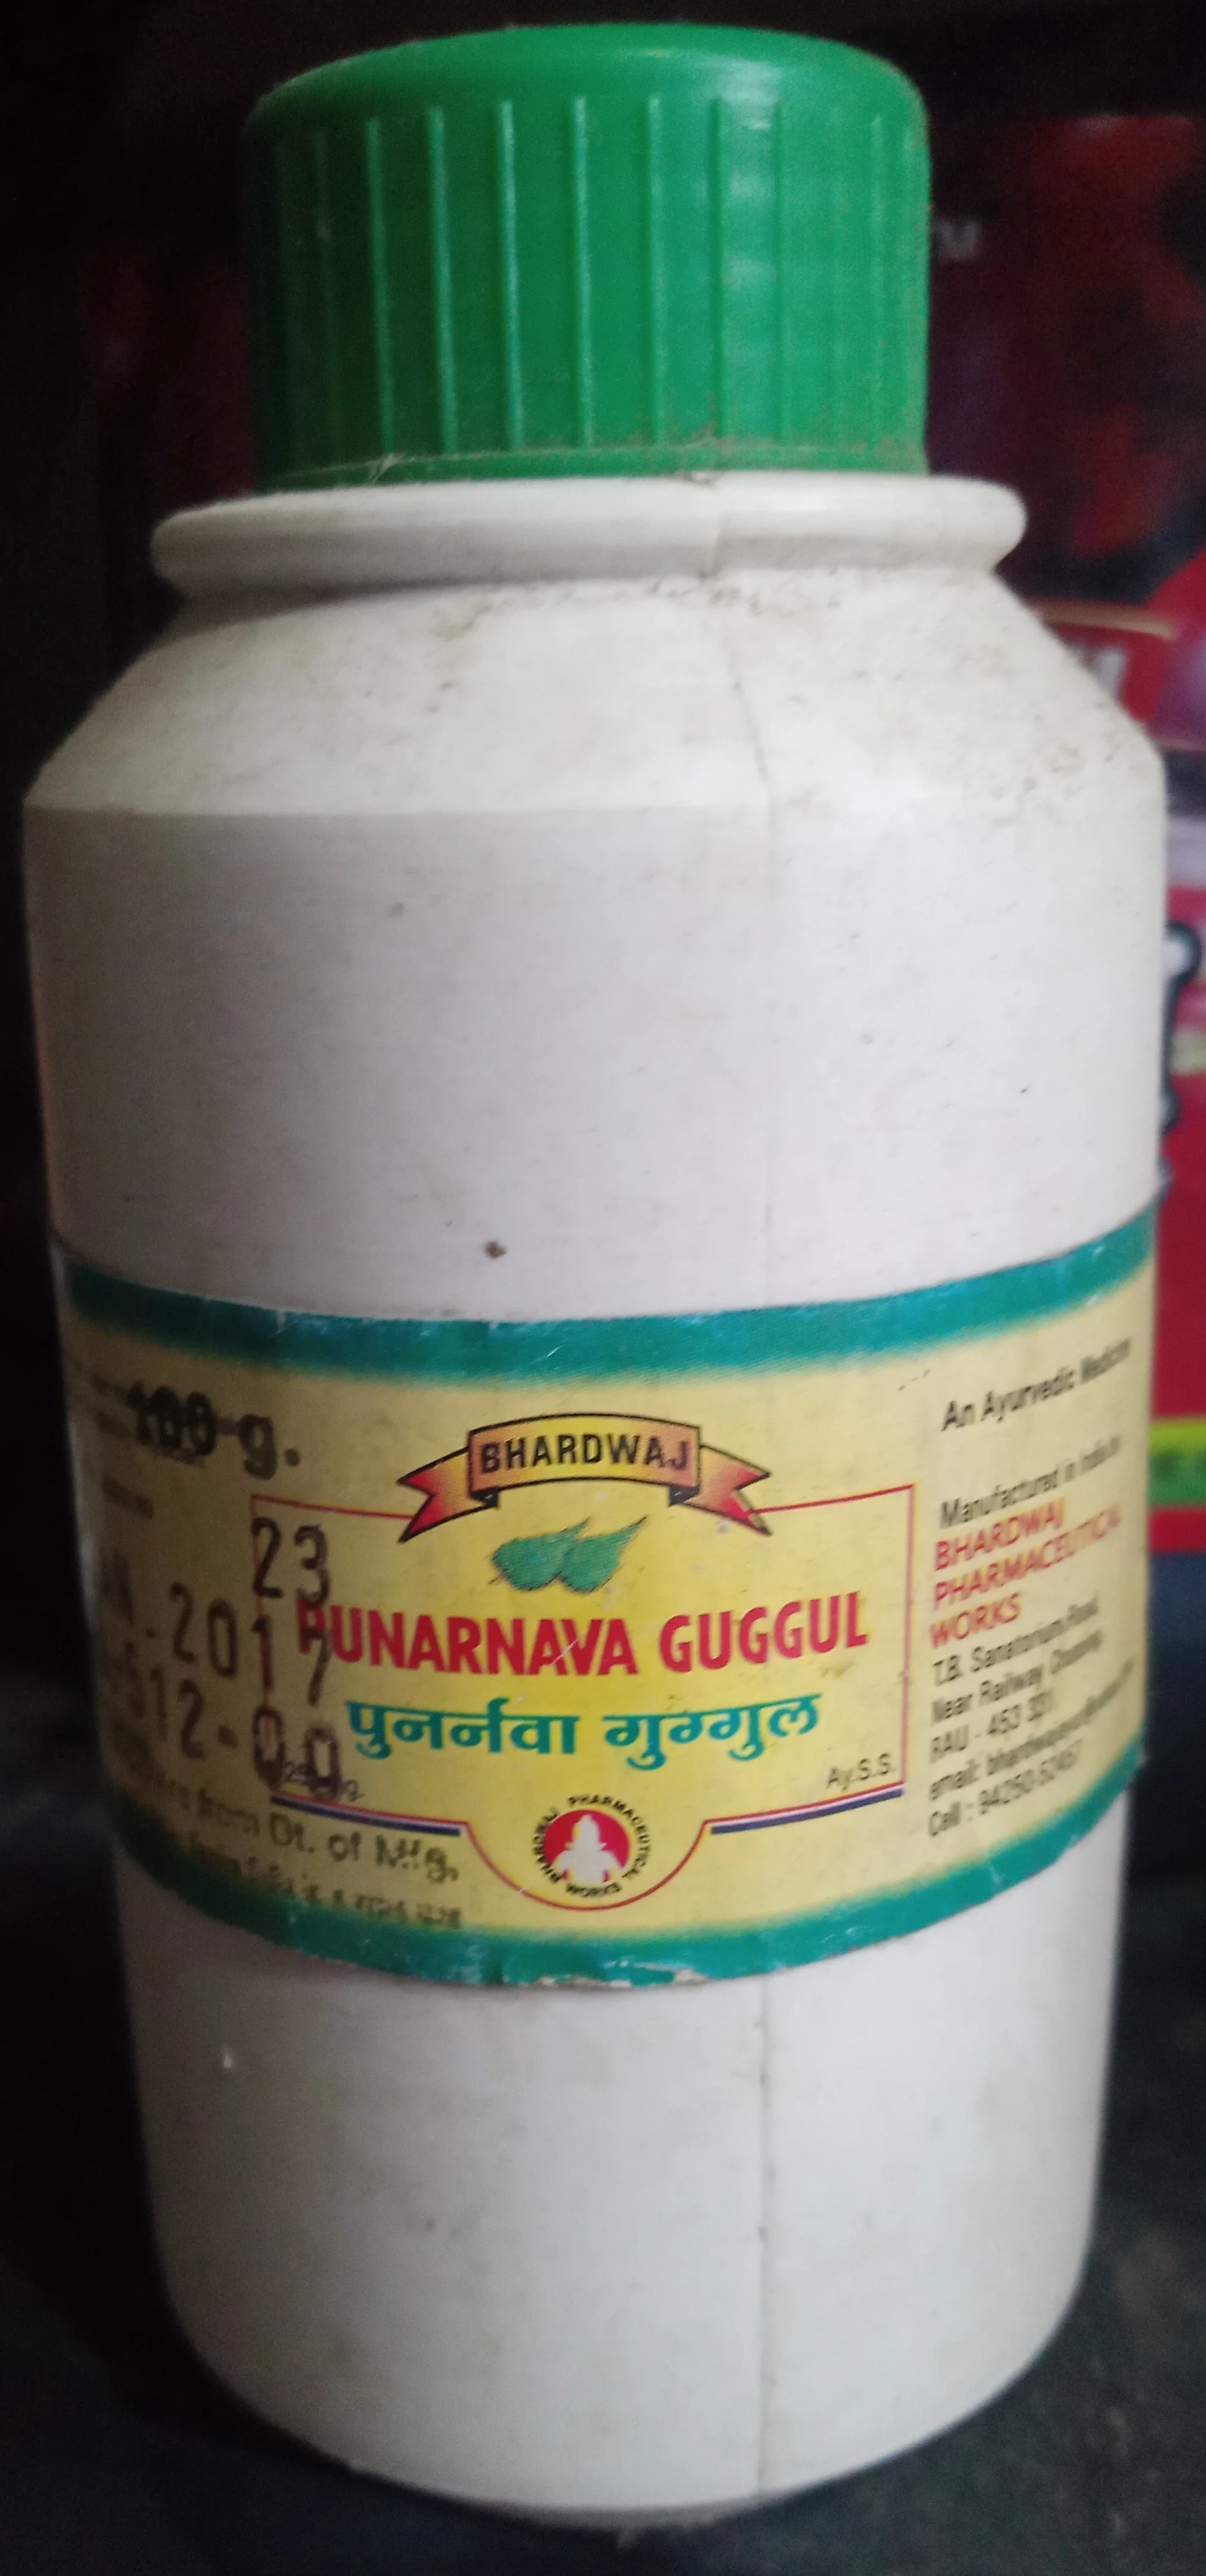 punarnava guggul 1 kg upto 20% off free shipping bhardwaj pharmaceuticals indore